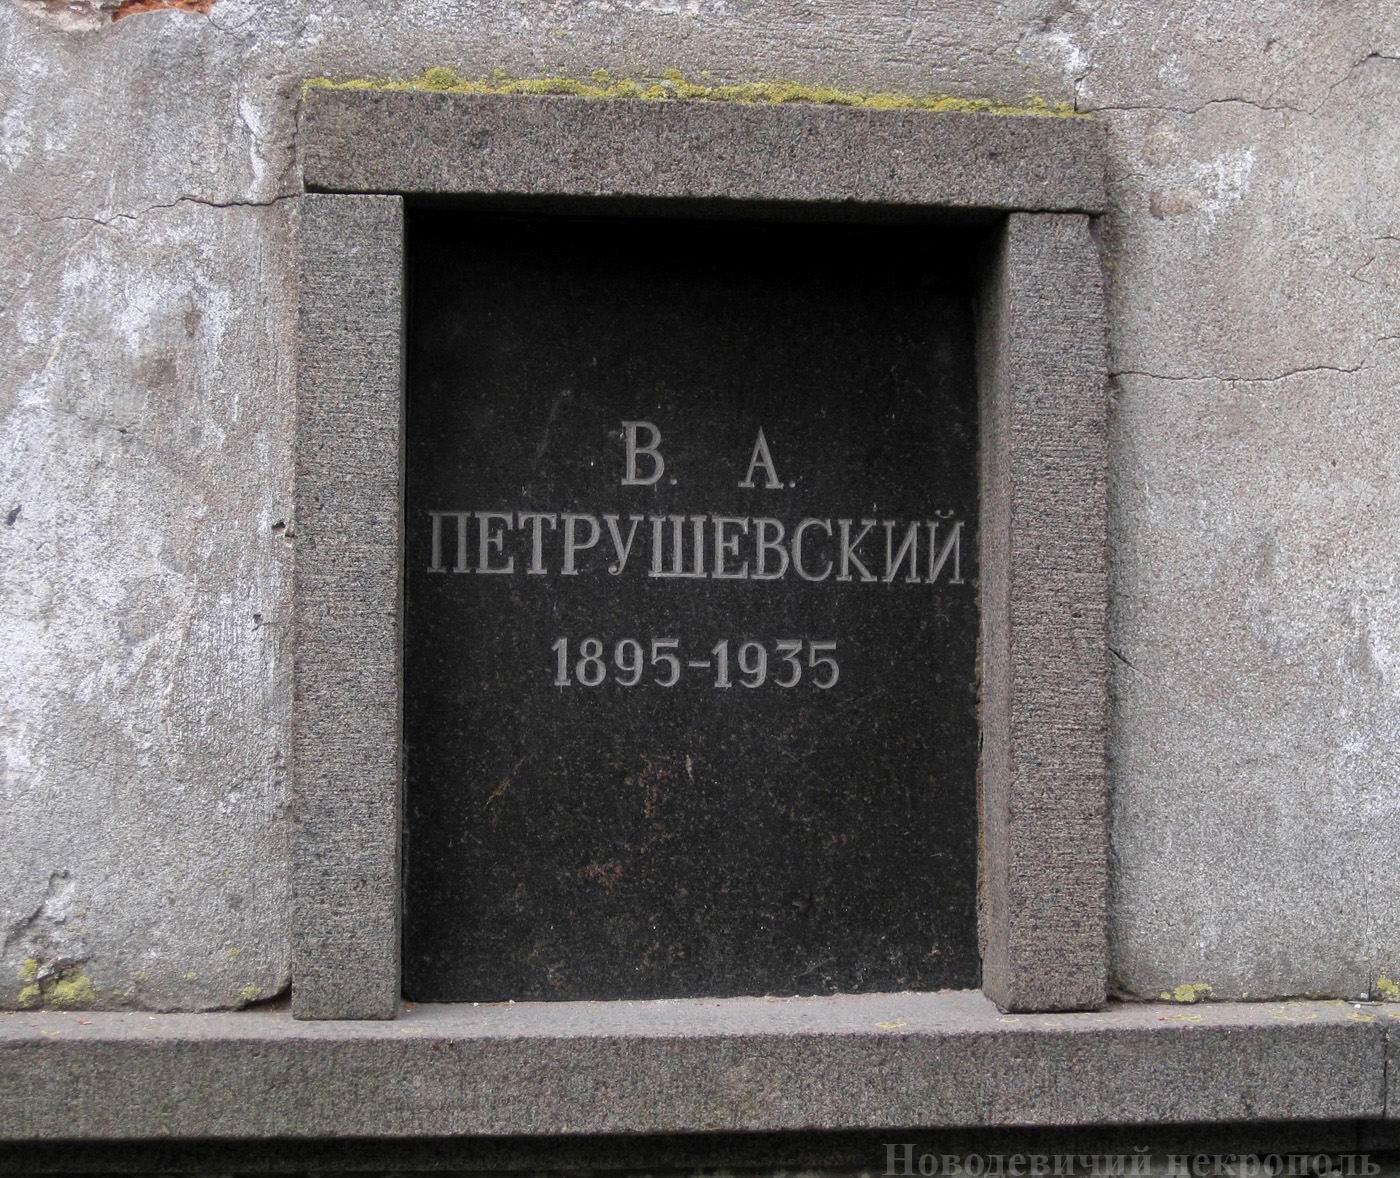 Плита на нише Петрушевского В.А. (1895-1935), на Новодевичьем кладбище (колумбарий [3]-35). Нажмите левую кнопку мыши, чтобы увидеть общий вид секции.